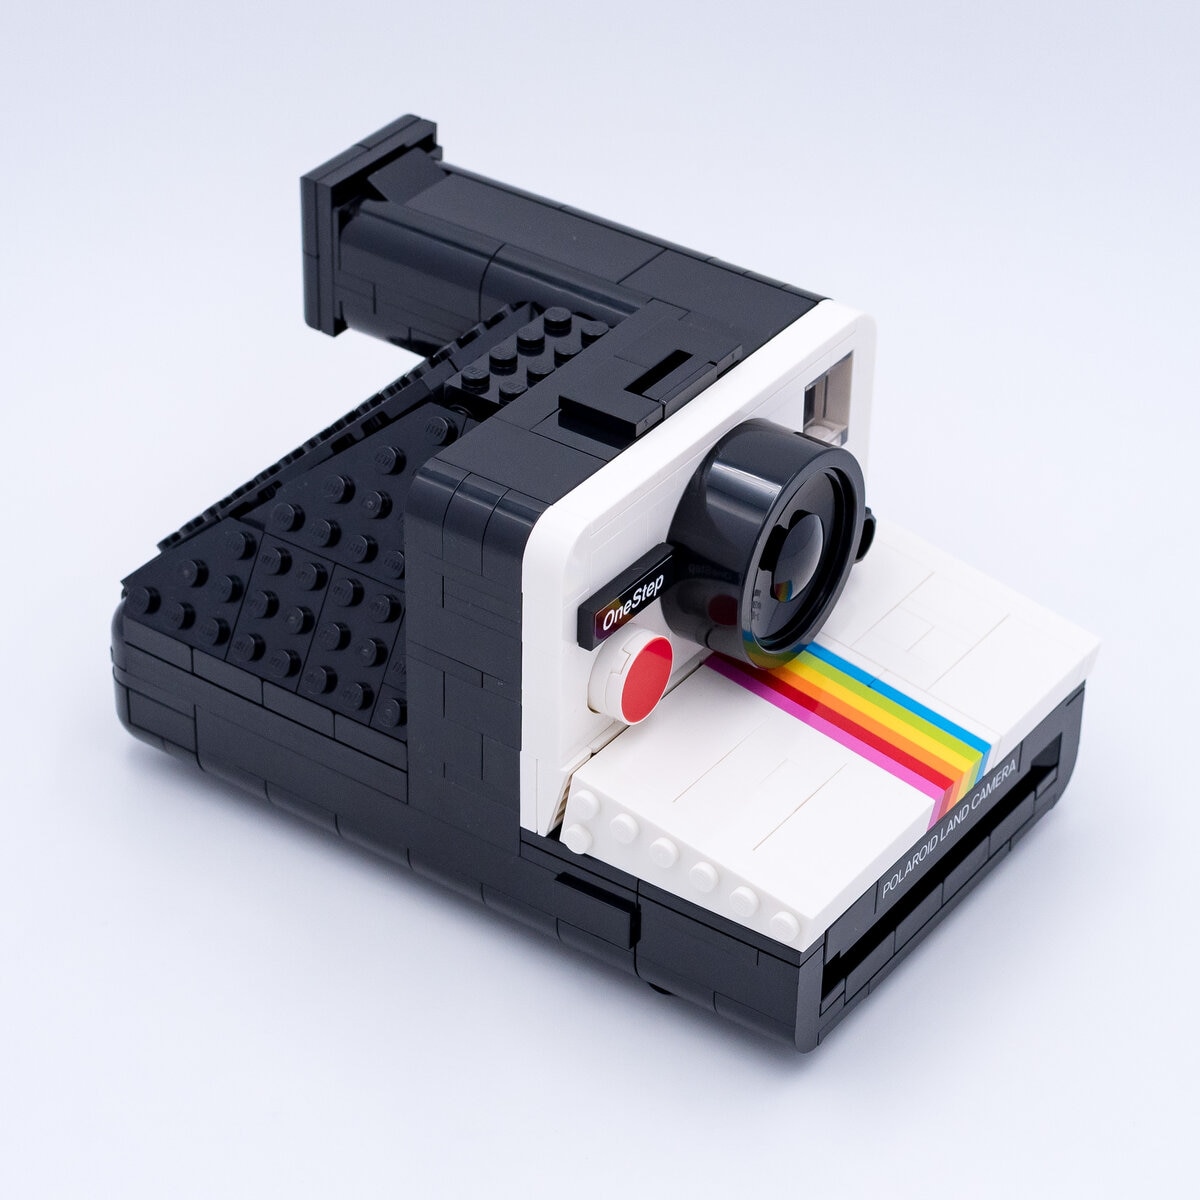 LEGO Ideas 21345 L'appareil photo Polaroid OneStep SX-70 dévoilé